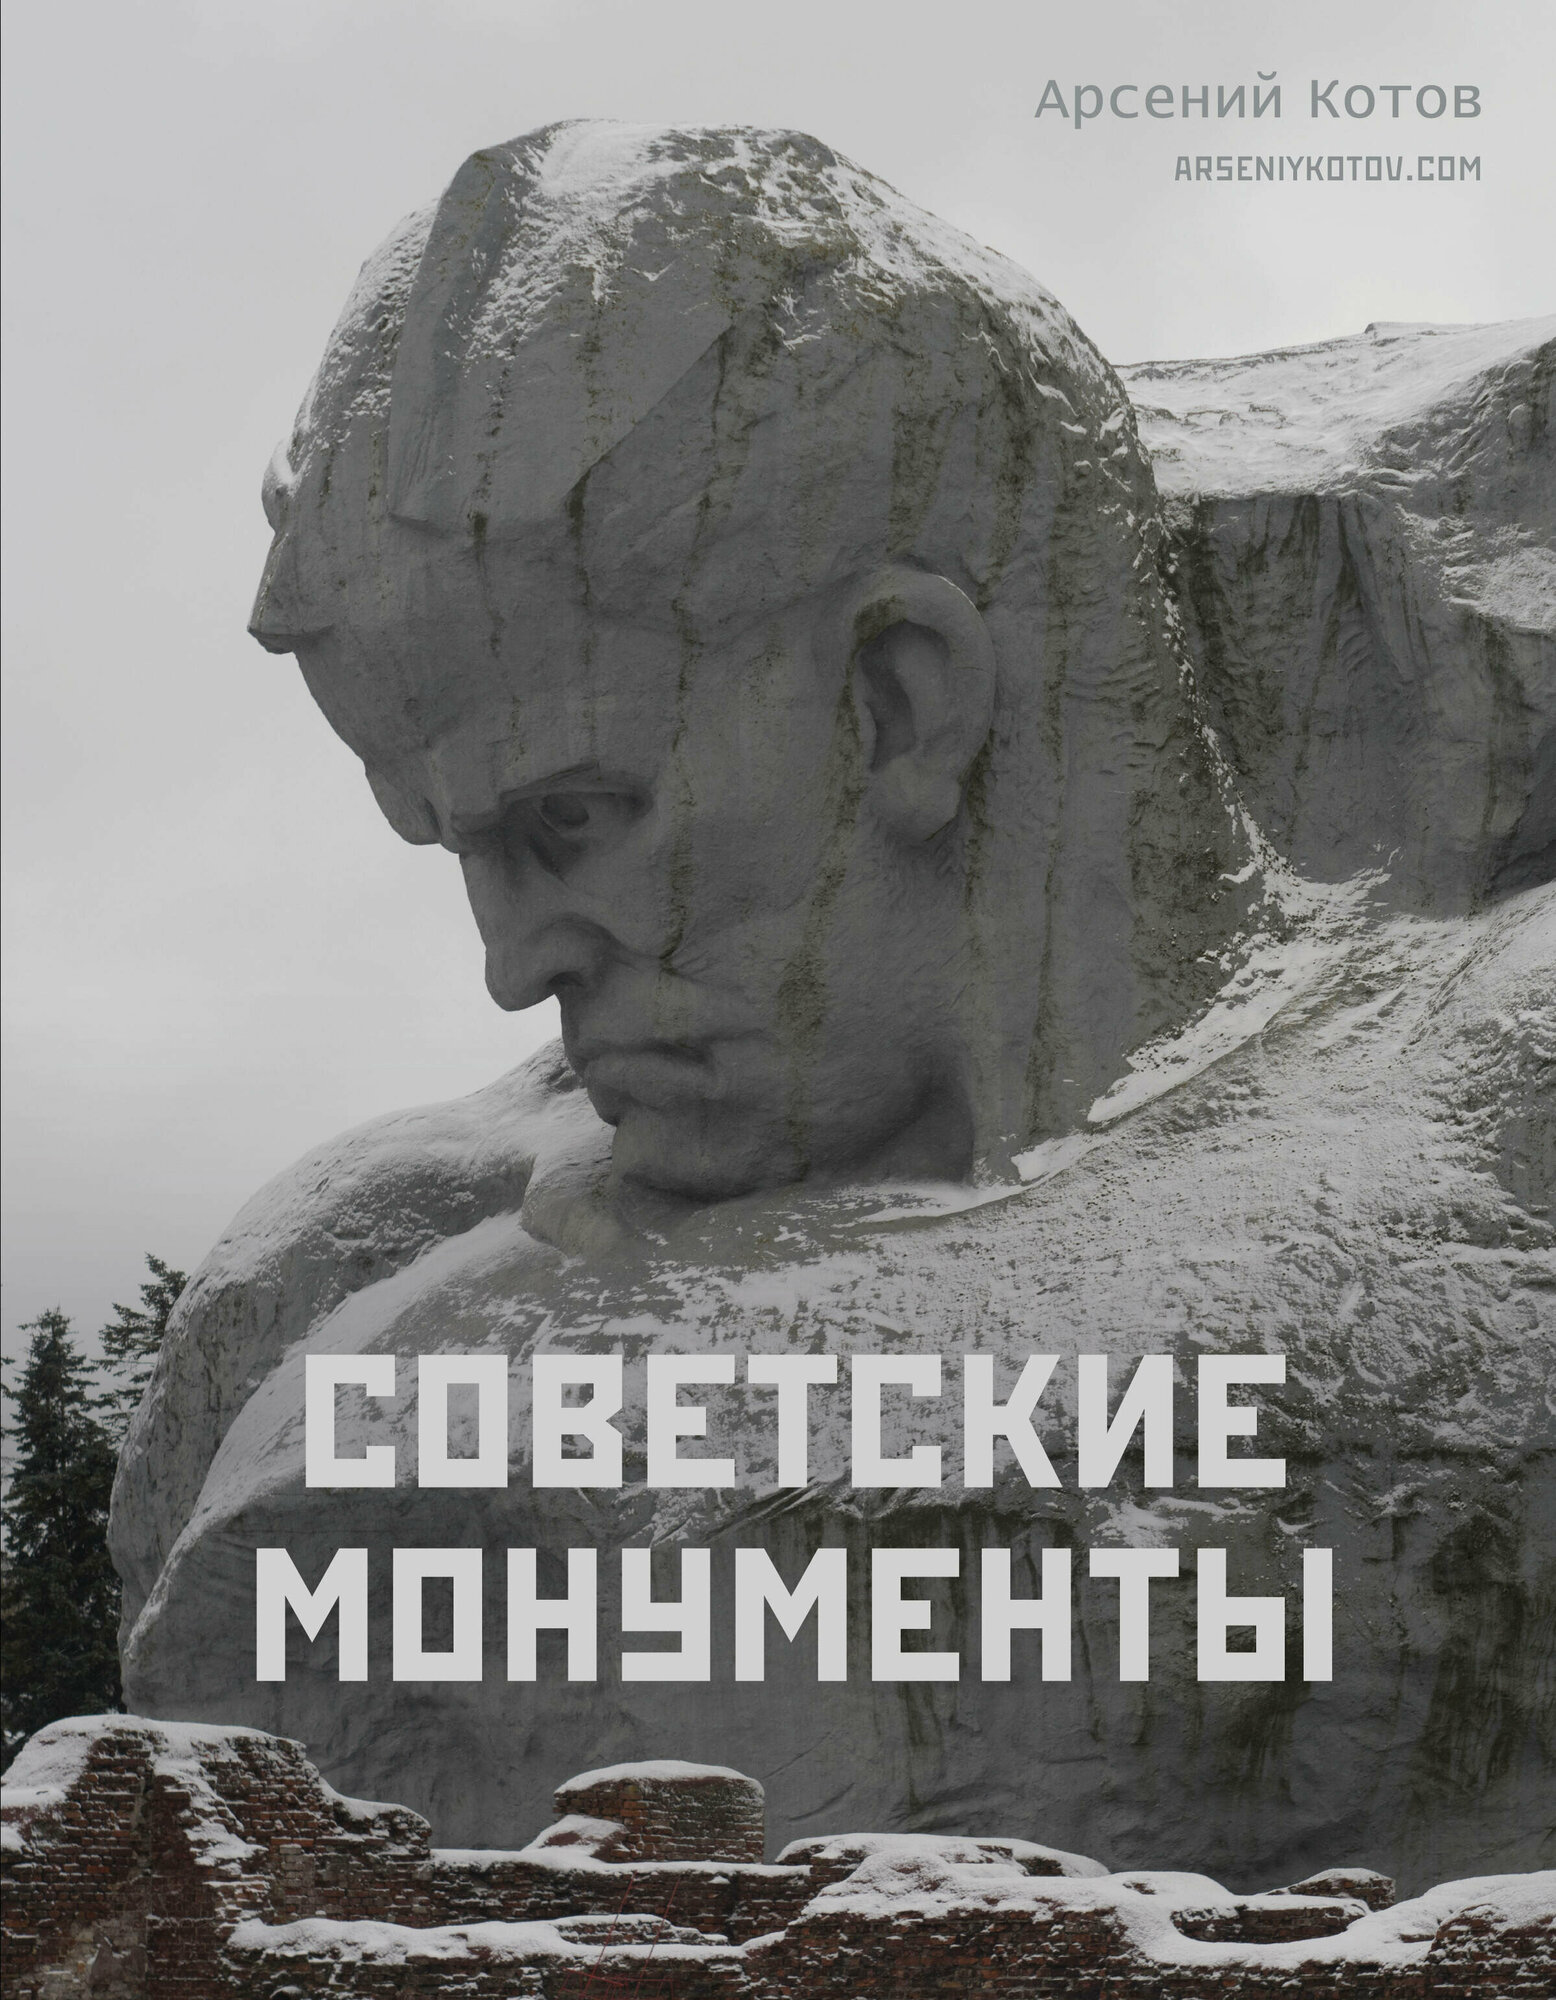 Советские монументы Котов А.